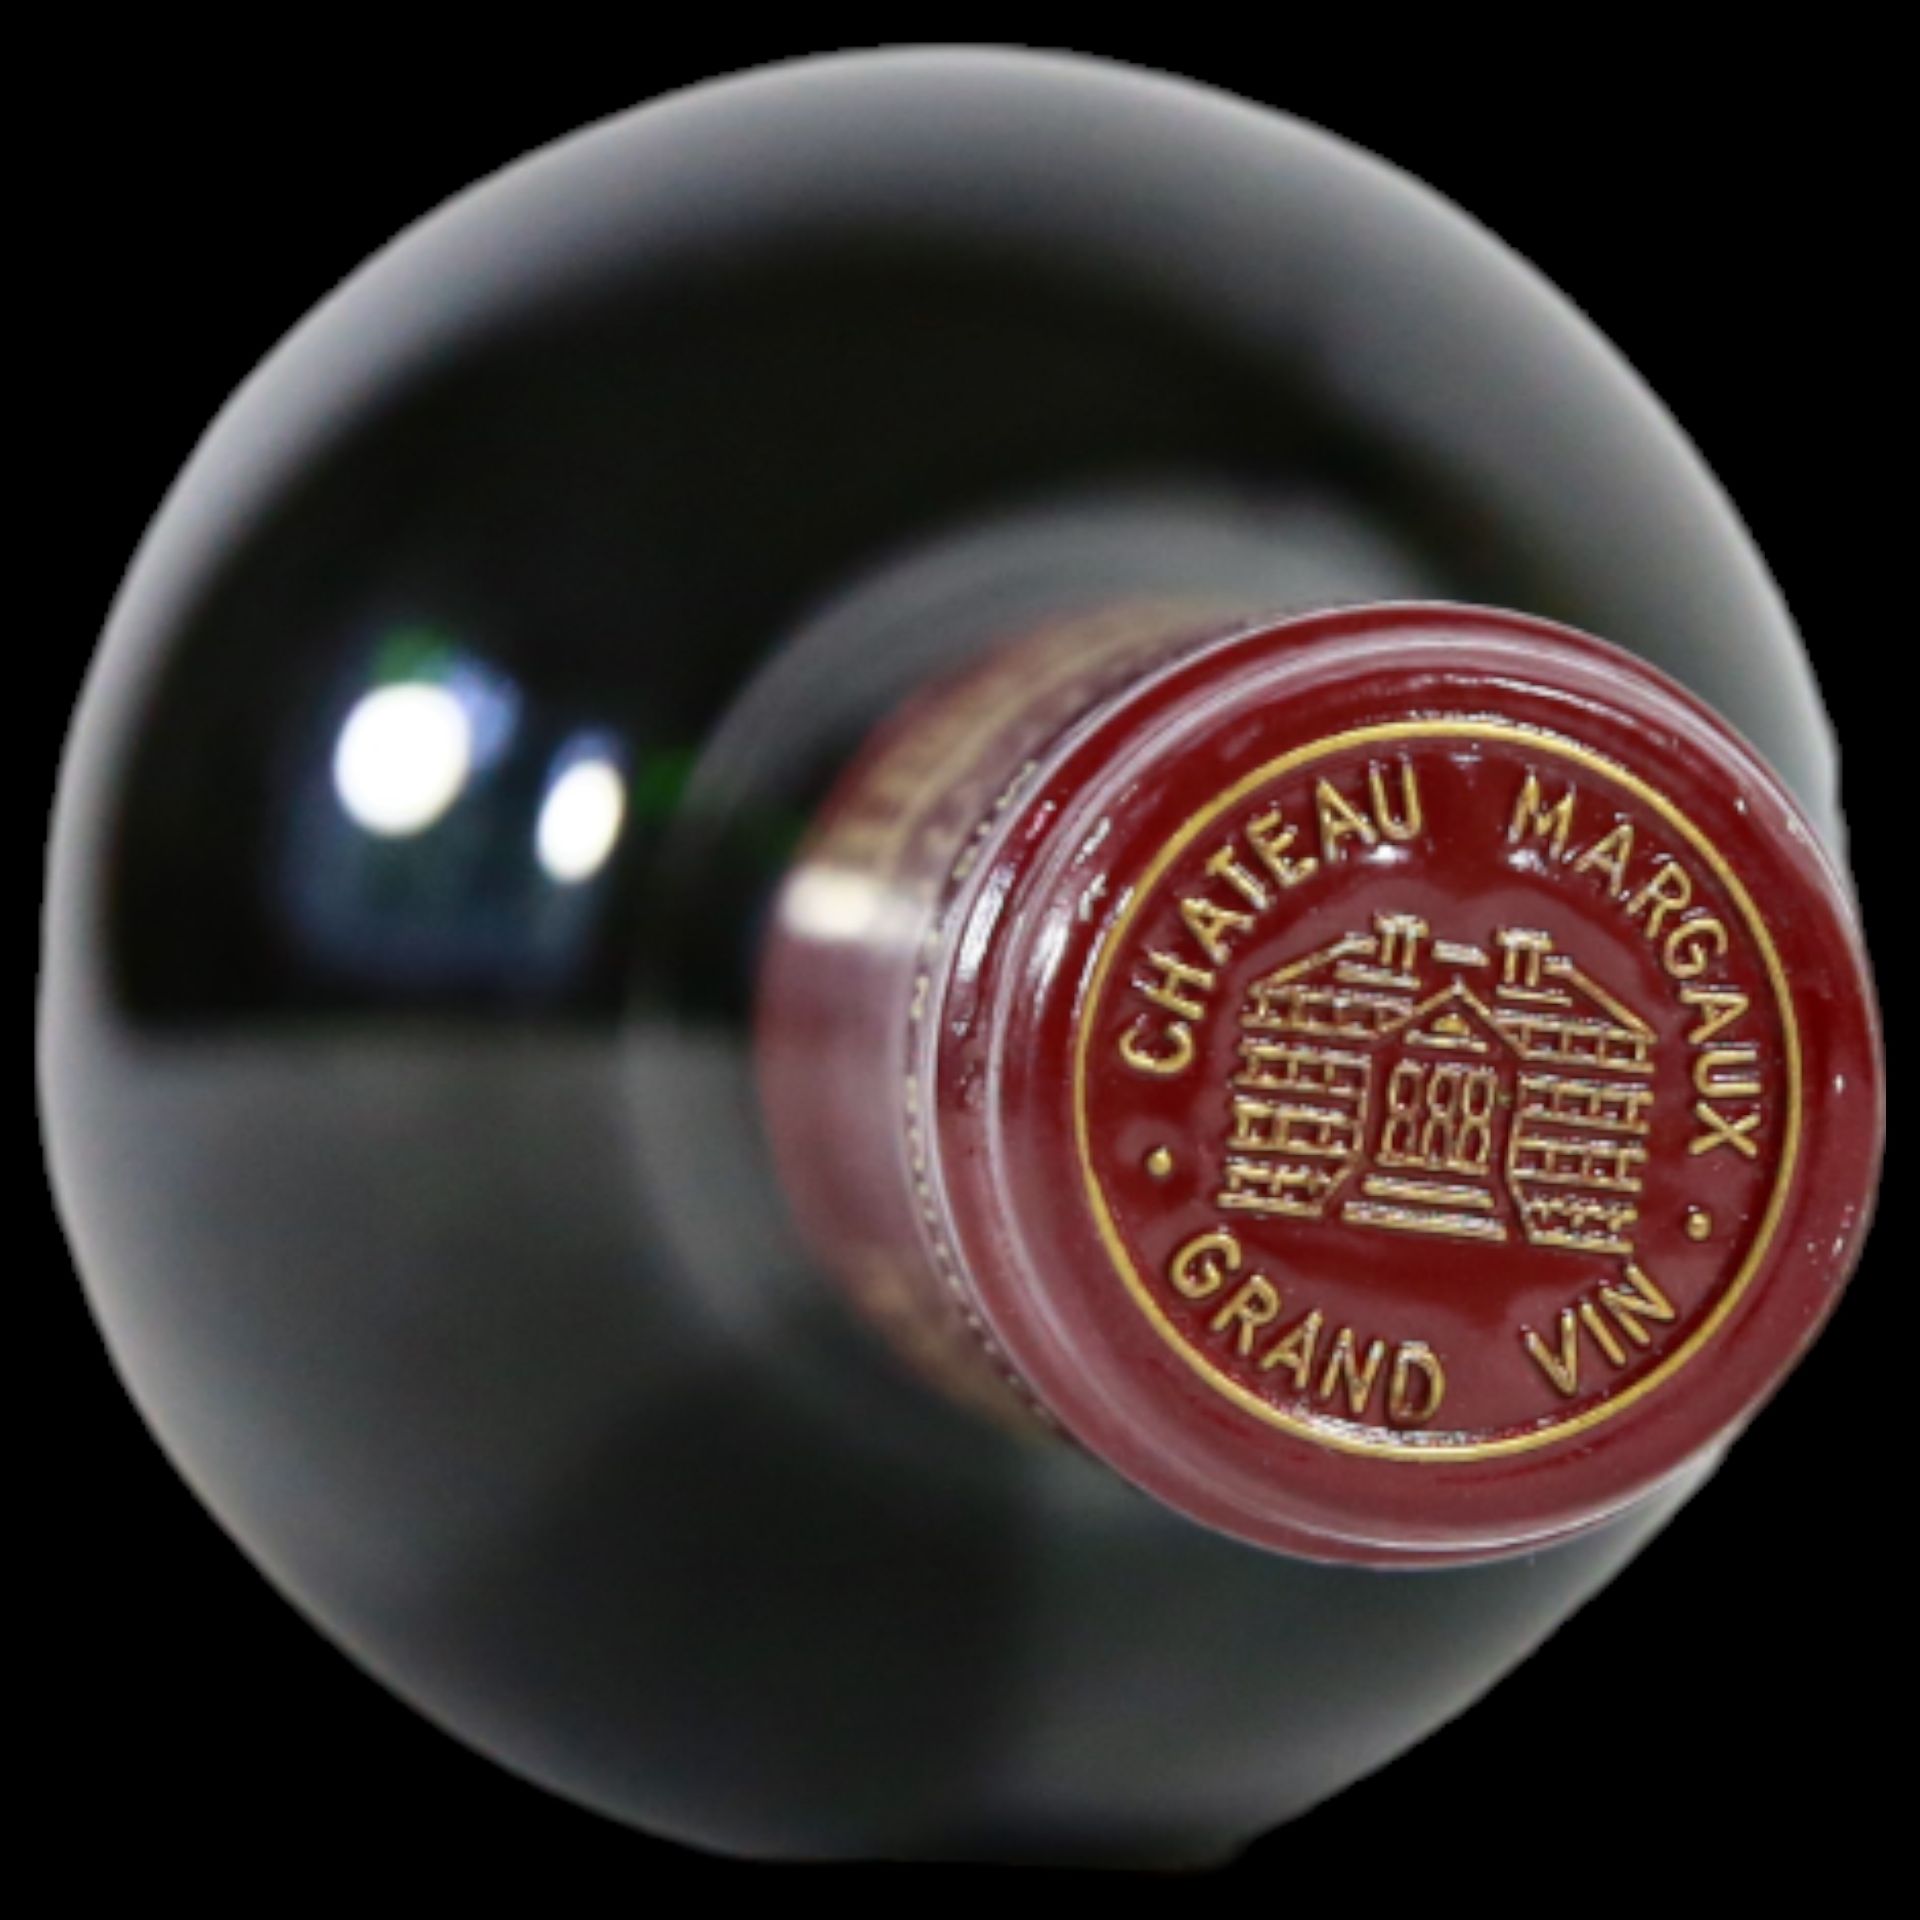 Bottle Vintage Chateau Margaux 1995, Premier Cru Classe. - Bild 12 aus 12